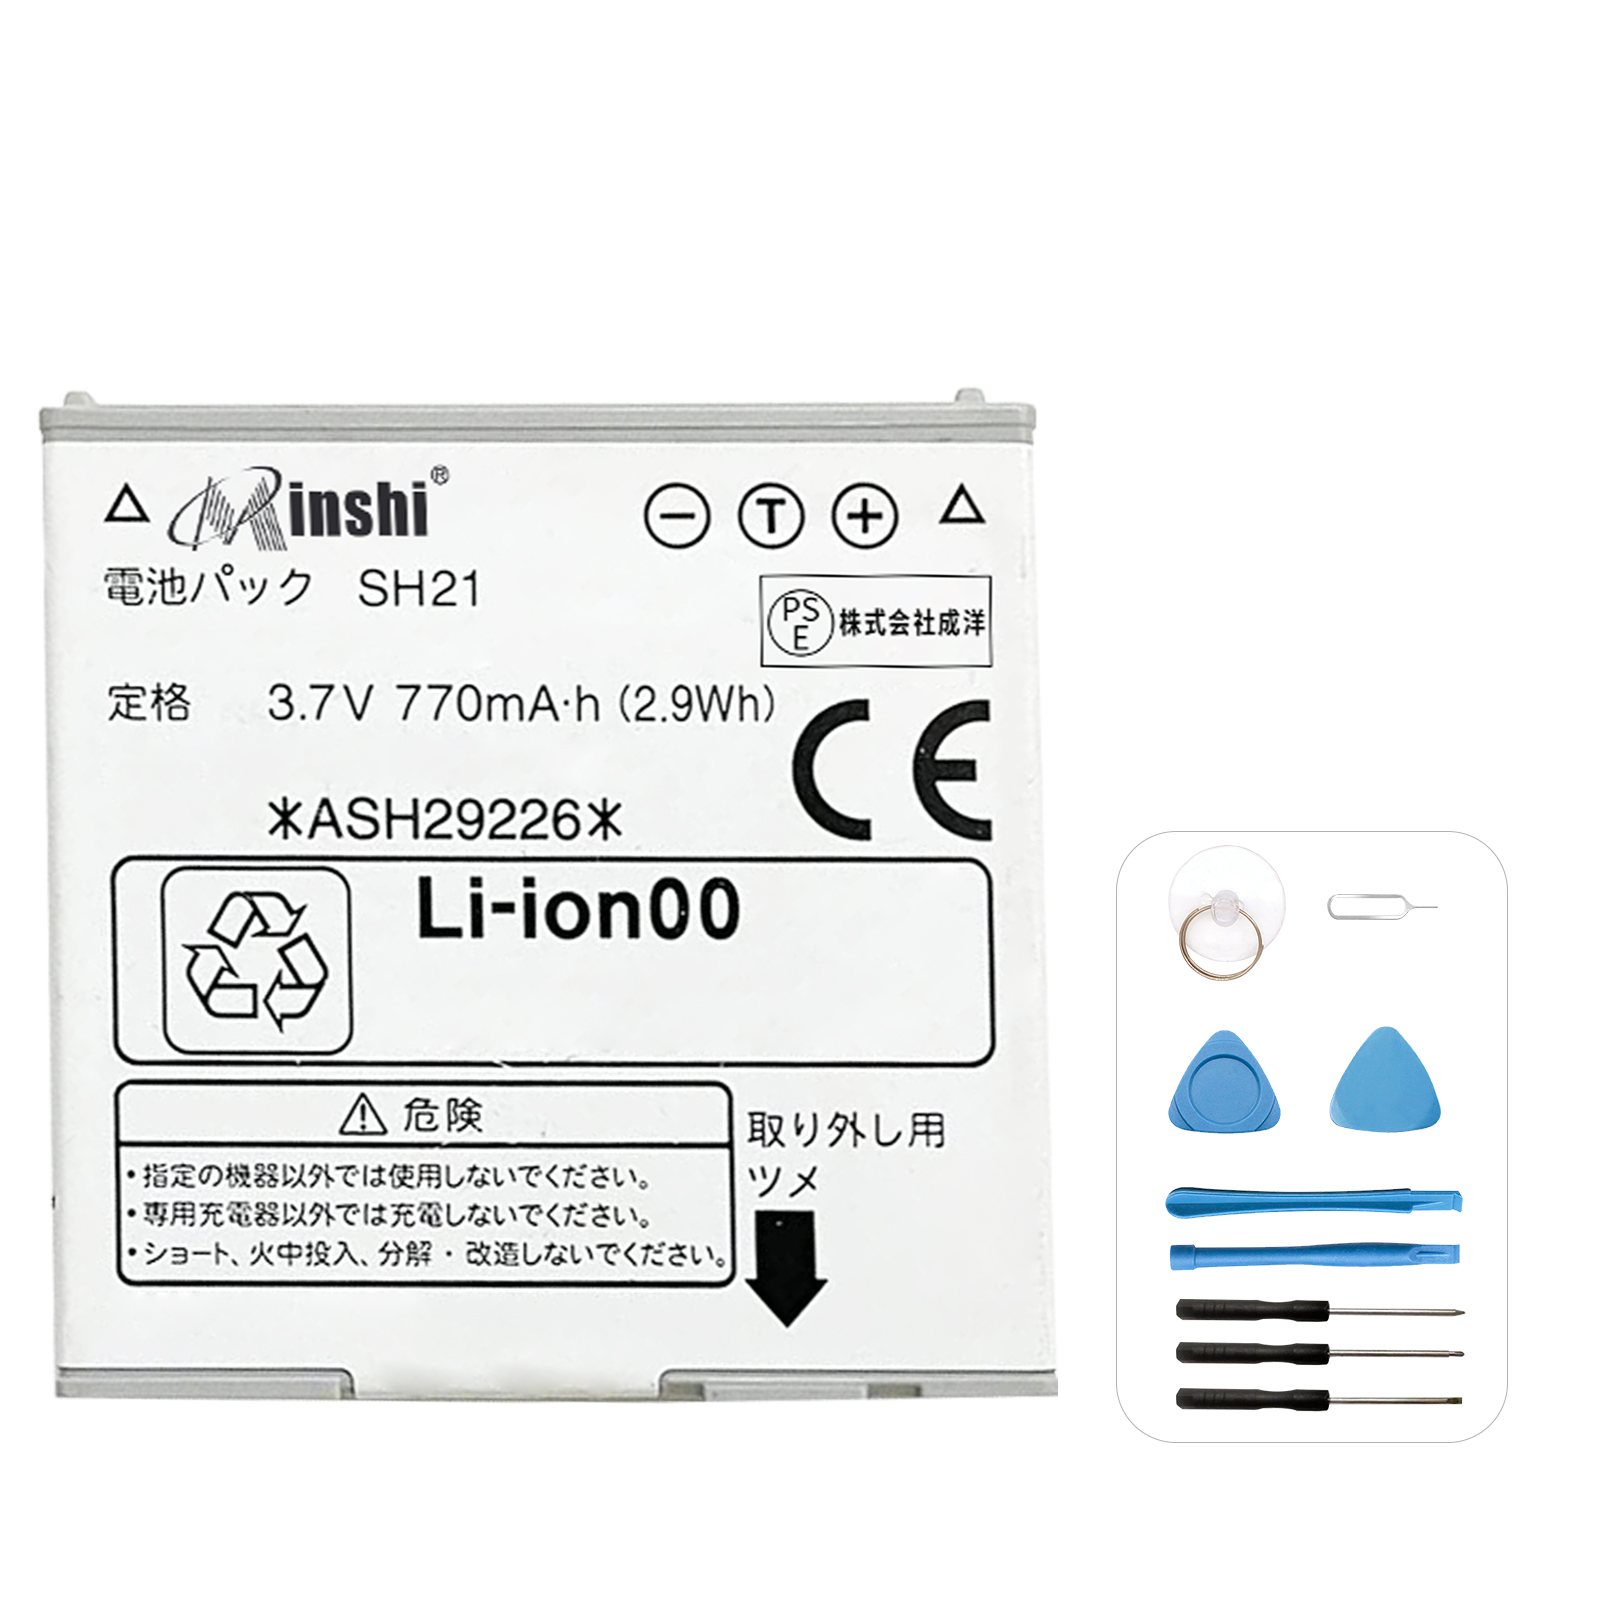 【1年保証】minshi  電池パック SH-02A 対応 交換バッテリー 770mAh PSE認定済 高性能 バッテリー